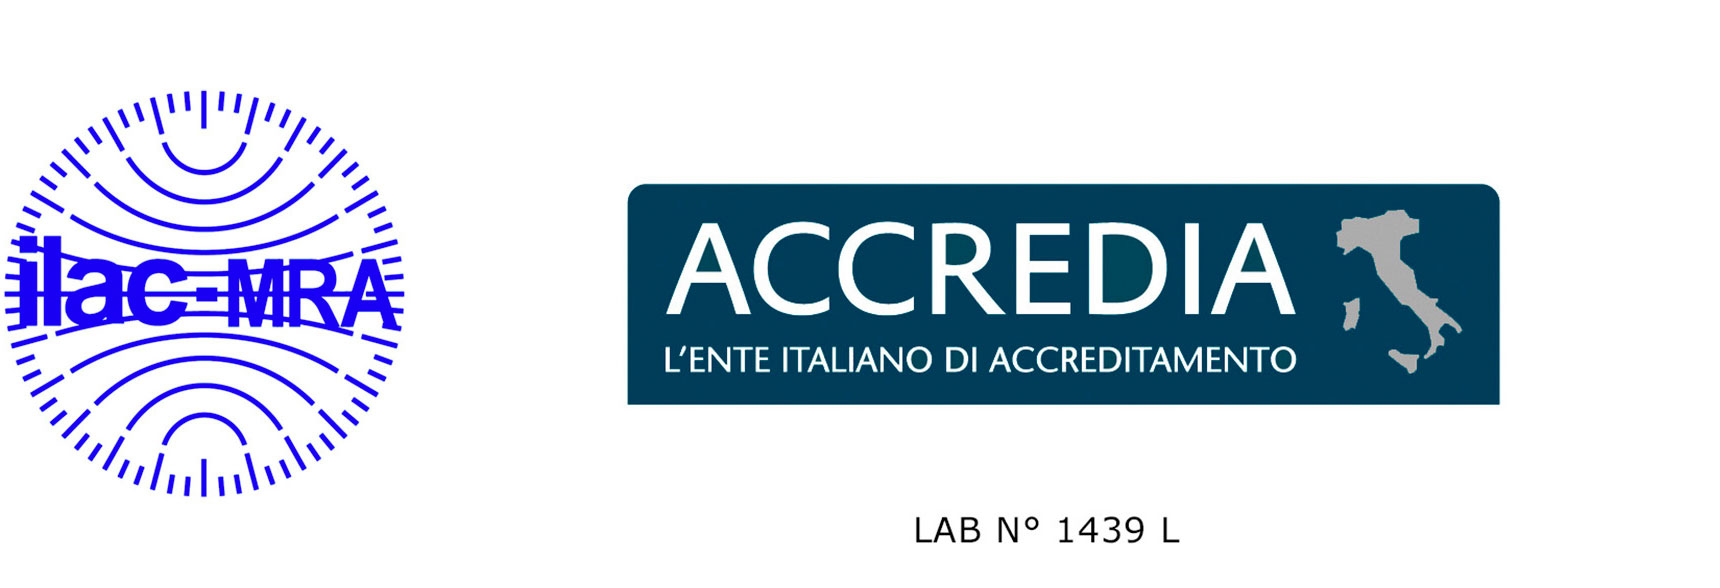 Laboratorio prove accreditato ACCREDIA n° 1439 L, in conformità a UNI CEI EN ISO/IEC 17025:2018